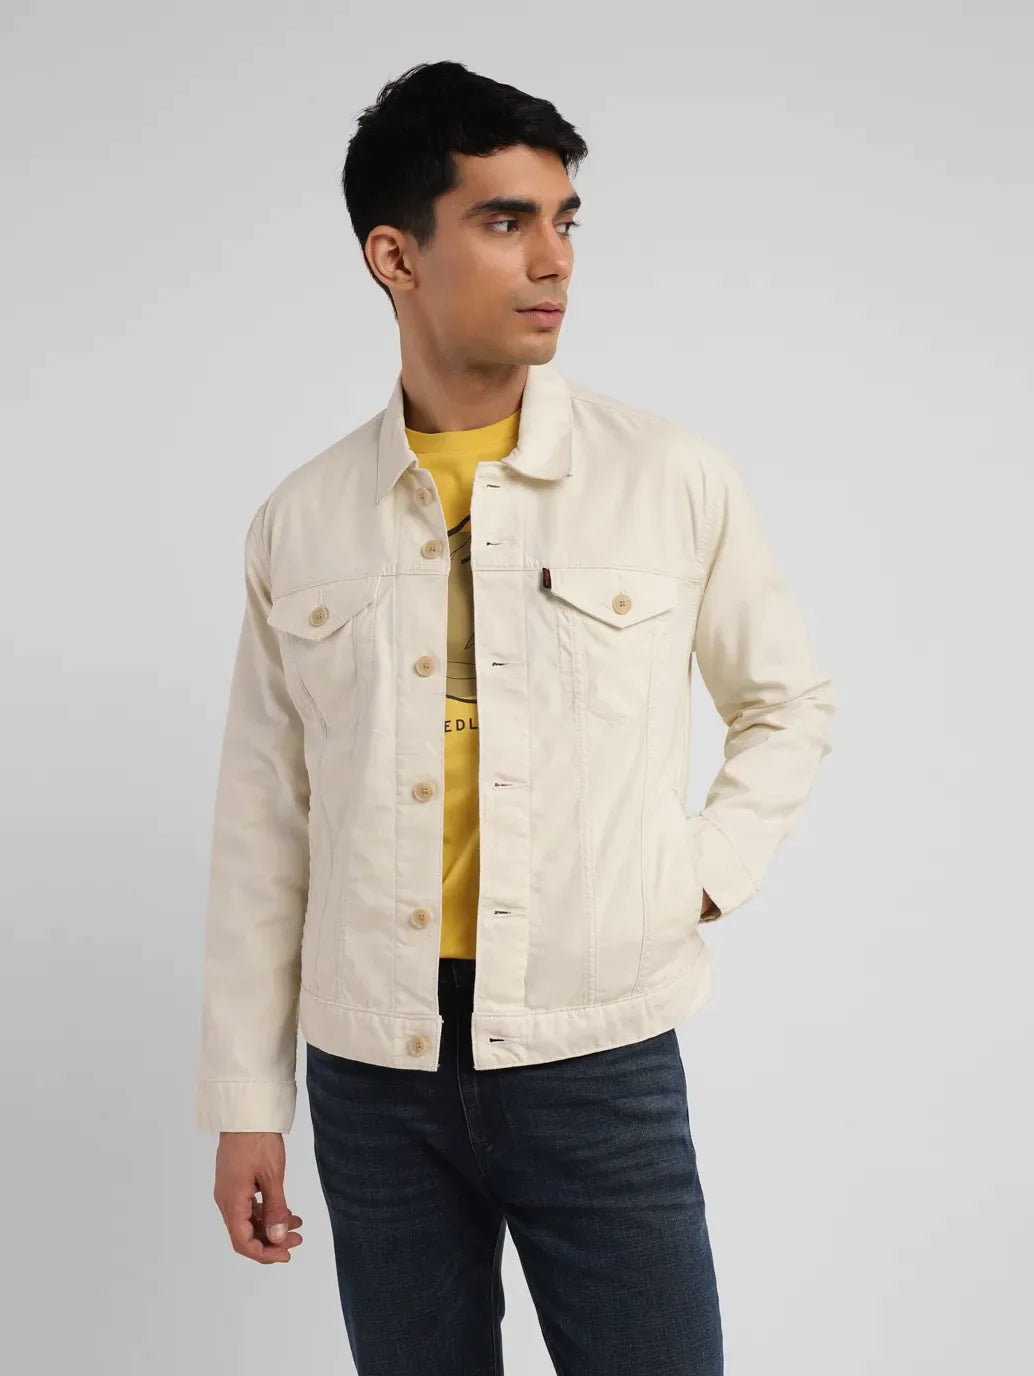 Men's Solid Cream Spread Collar Jacket